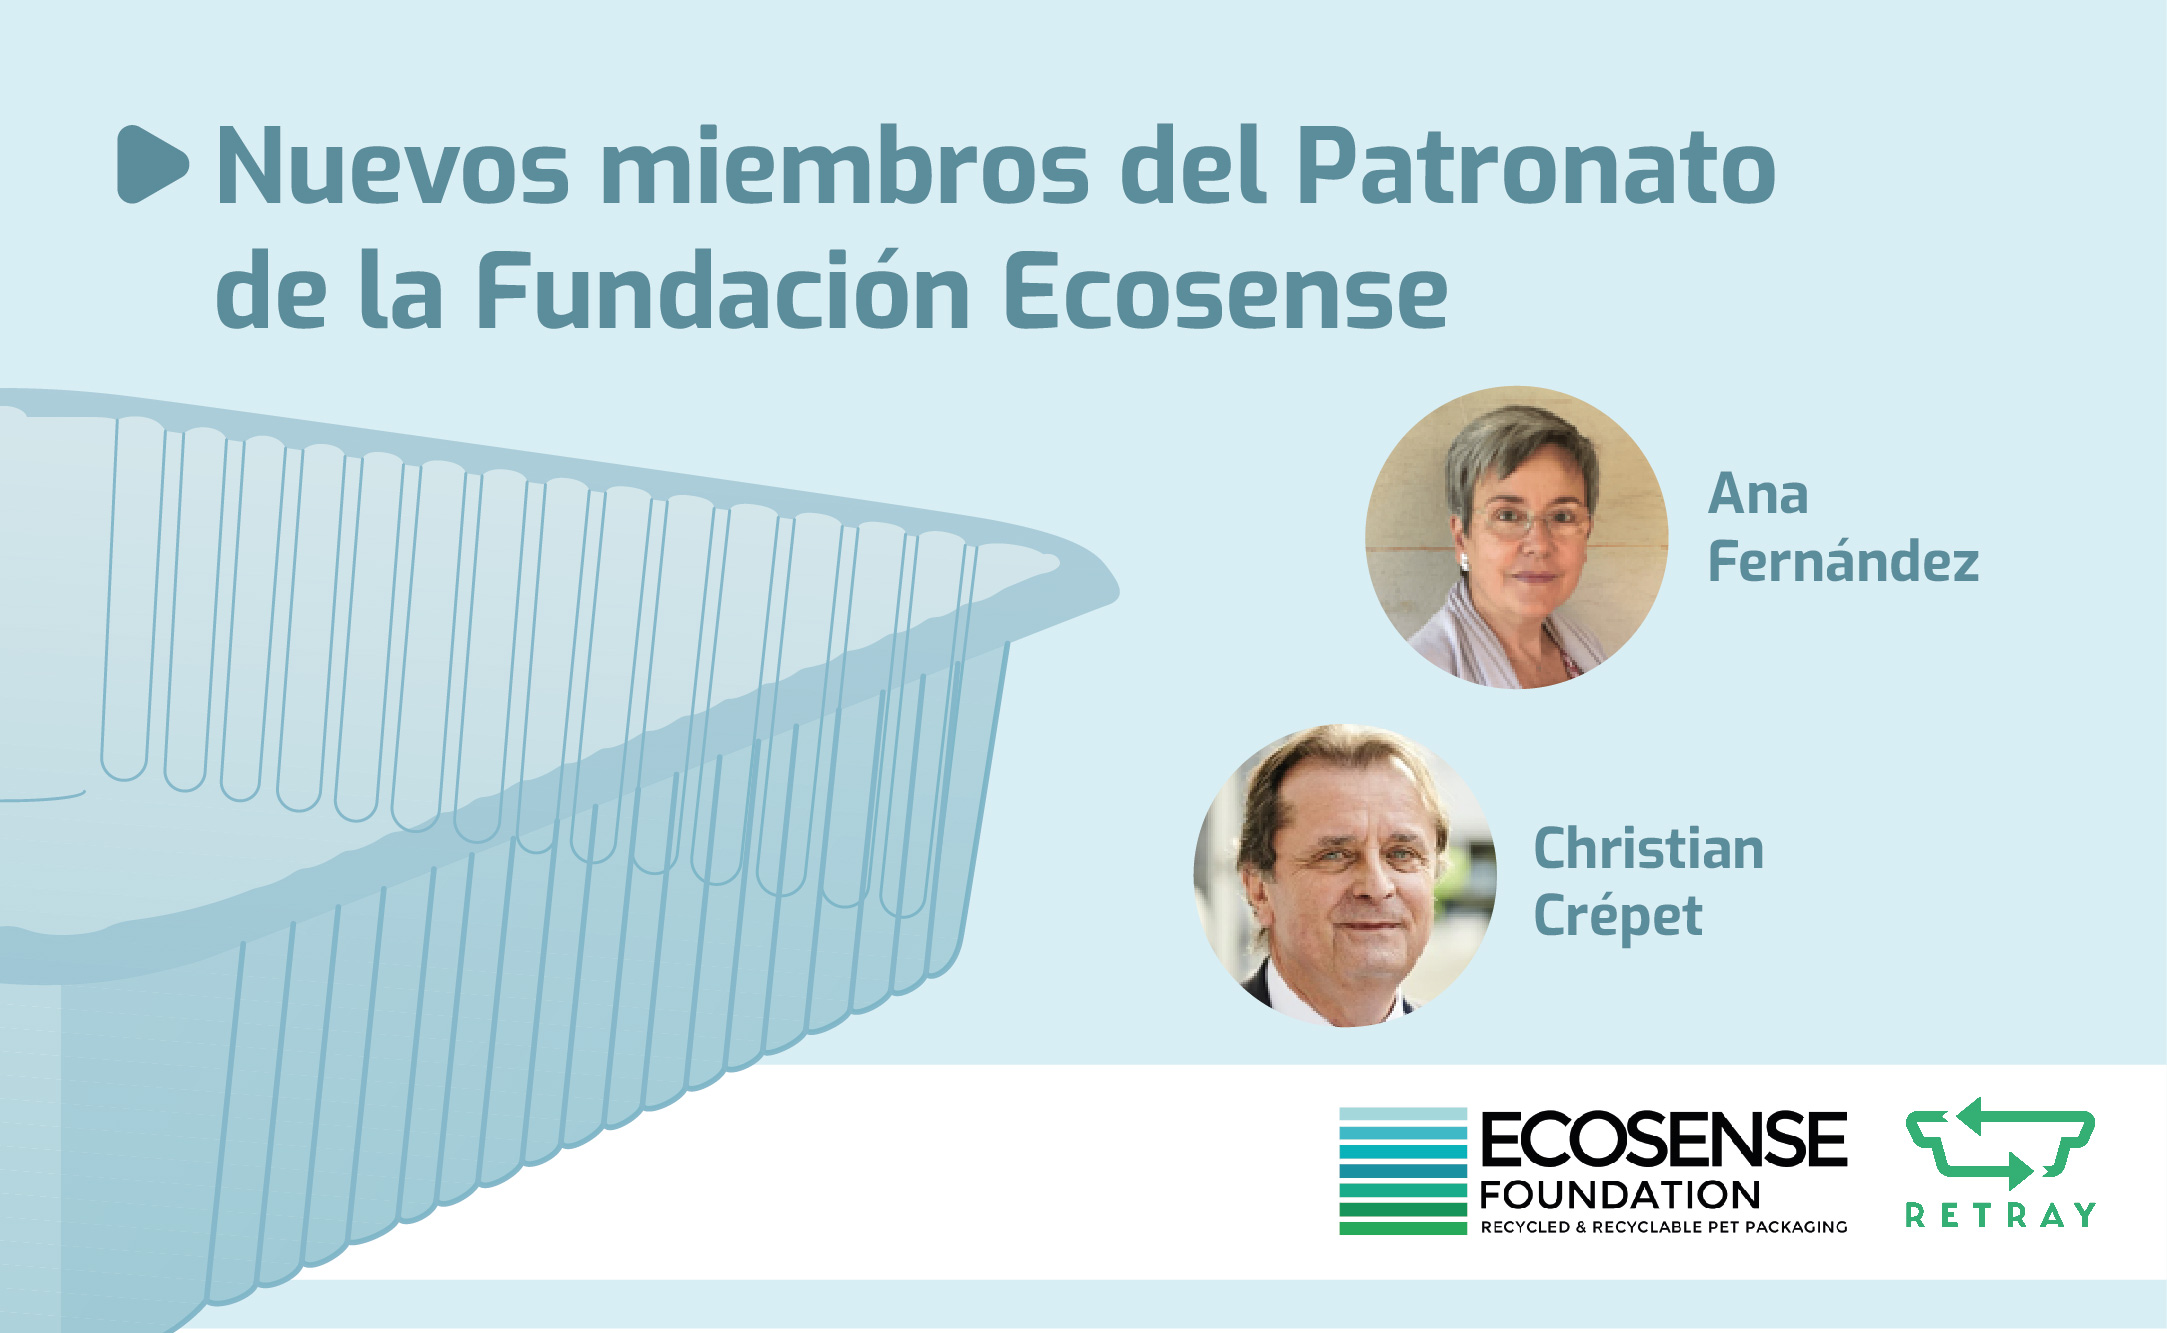 Ana Fernández y Christian Crépet, nuevos miembros del Patronato de la Fundación Ecosense